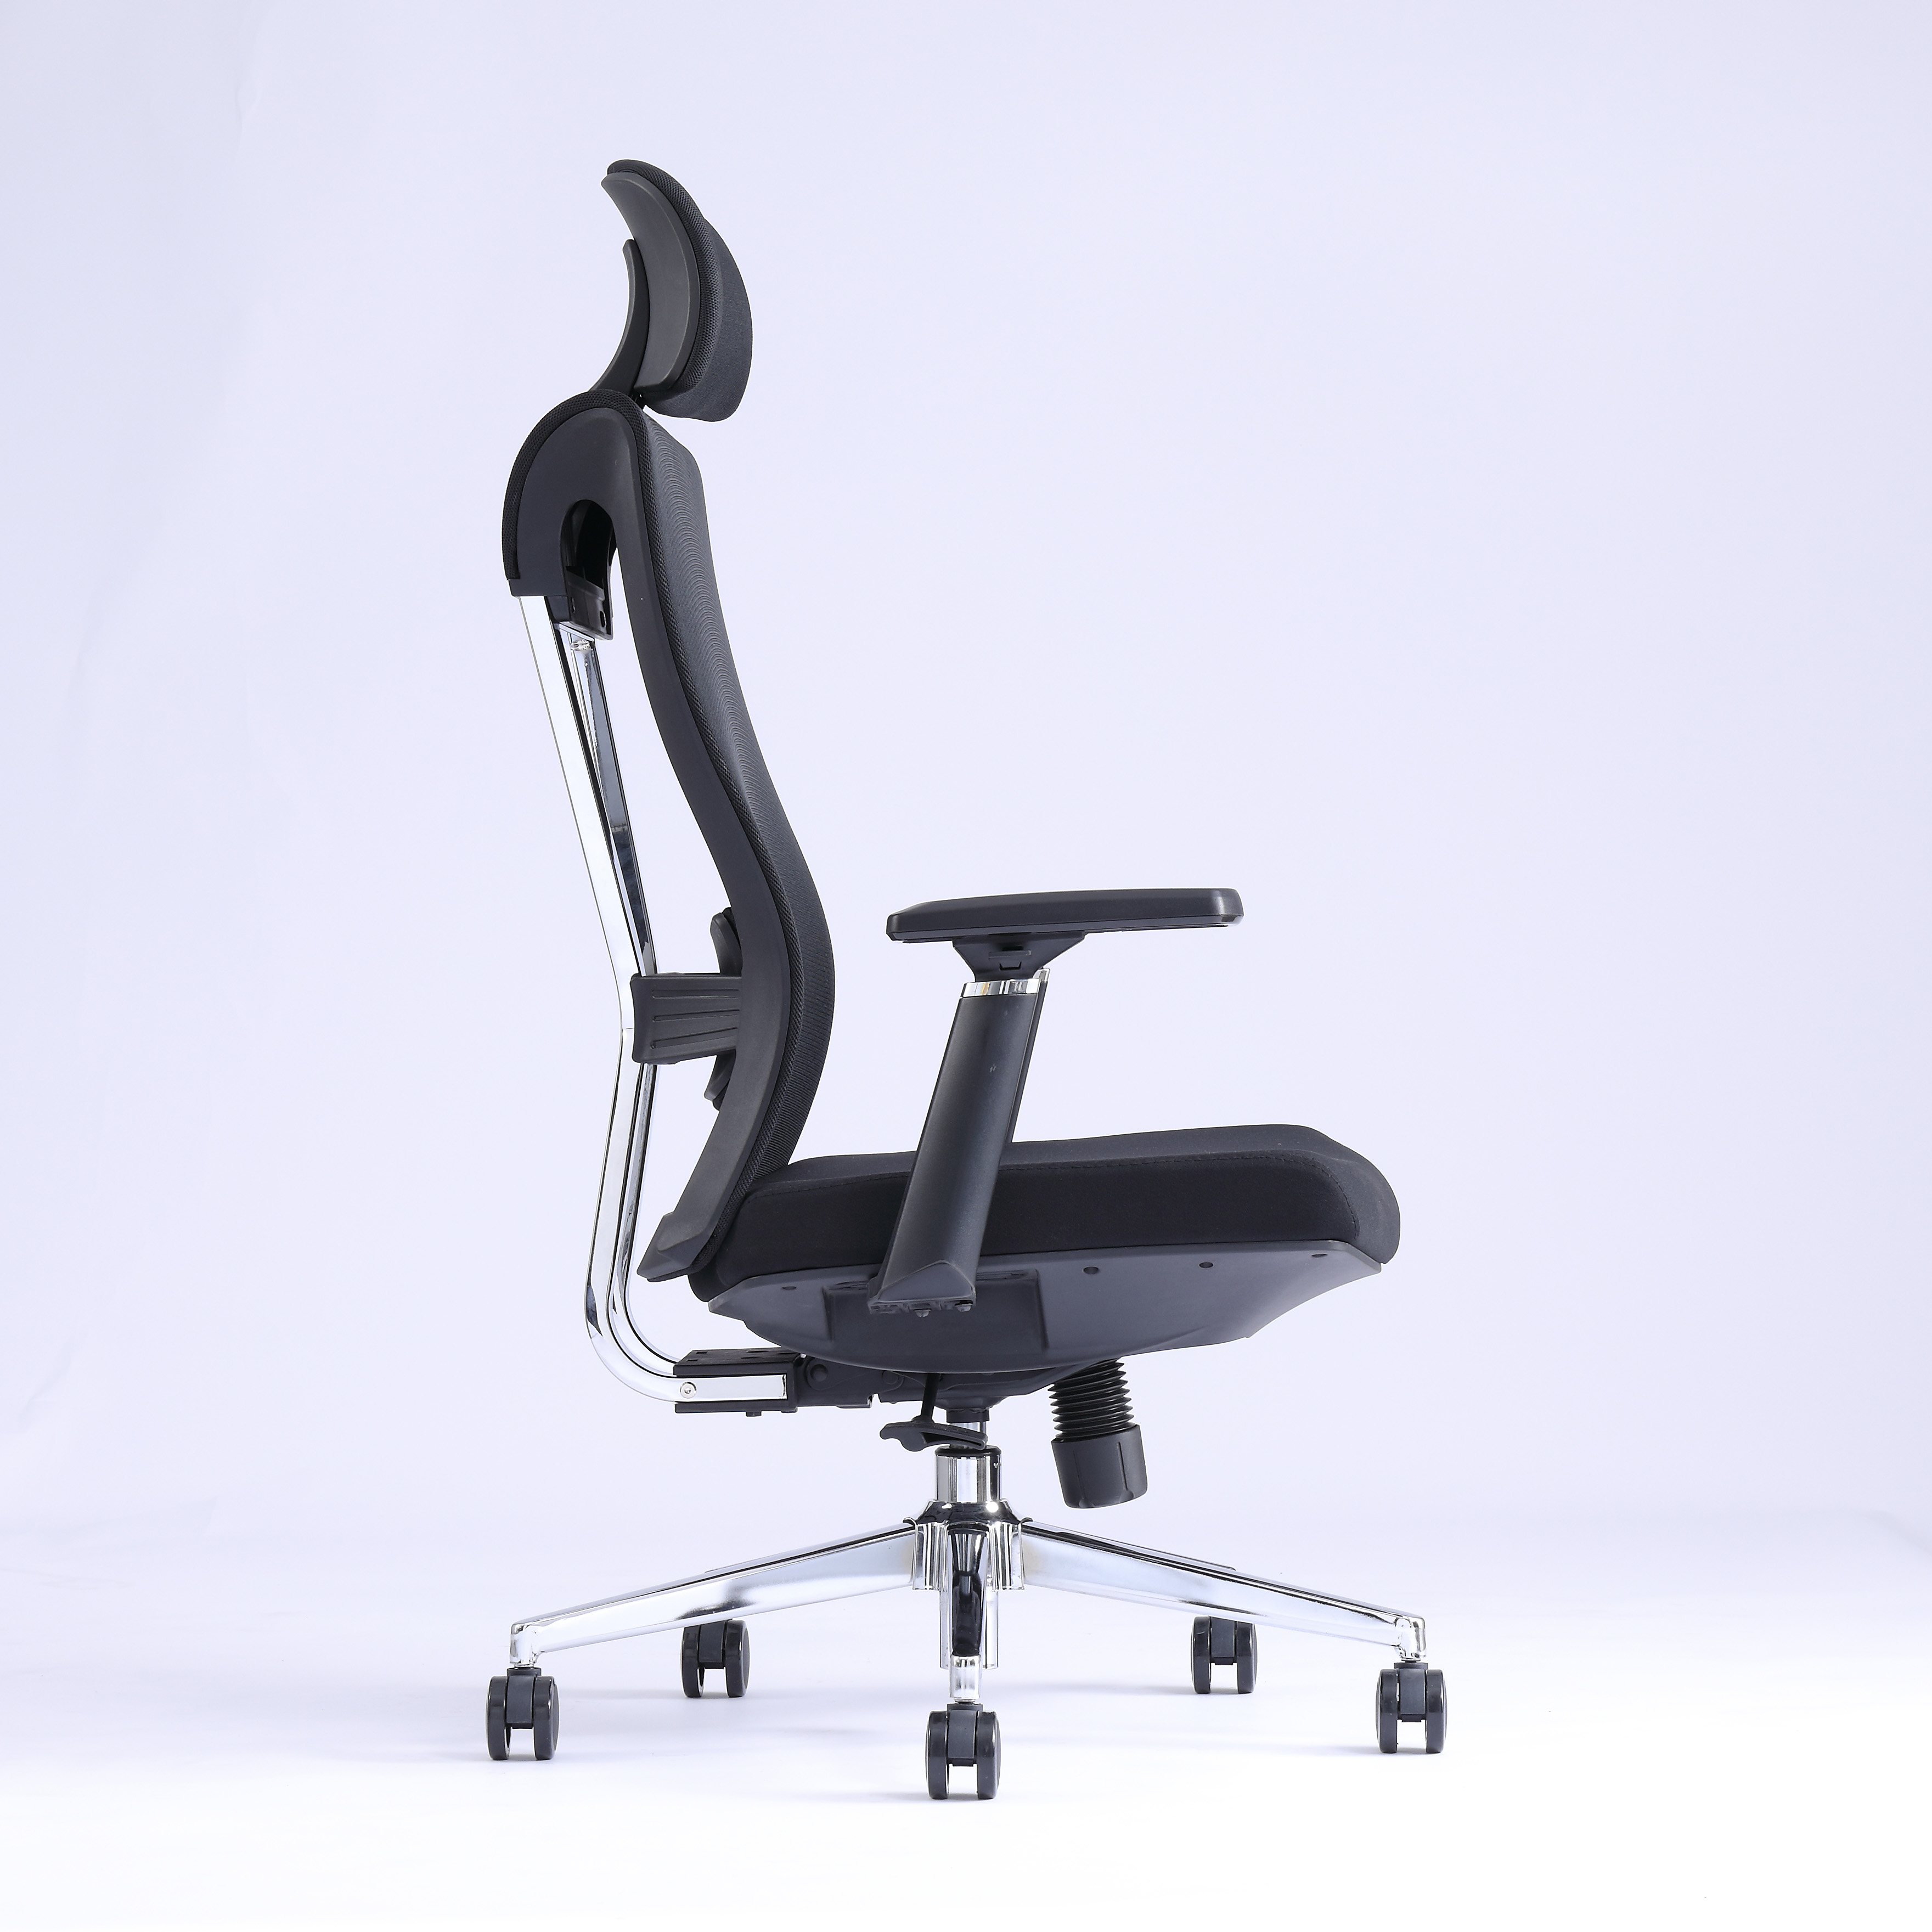 Moderna comfort economico sedia mobili per ufficio sedia mesh sedia sedia da ufficio regolabile sedia a maglia1